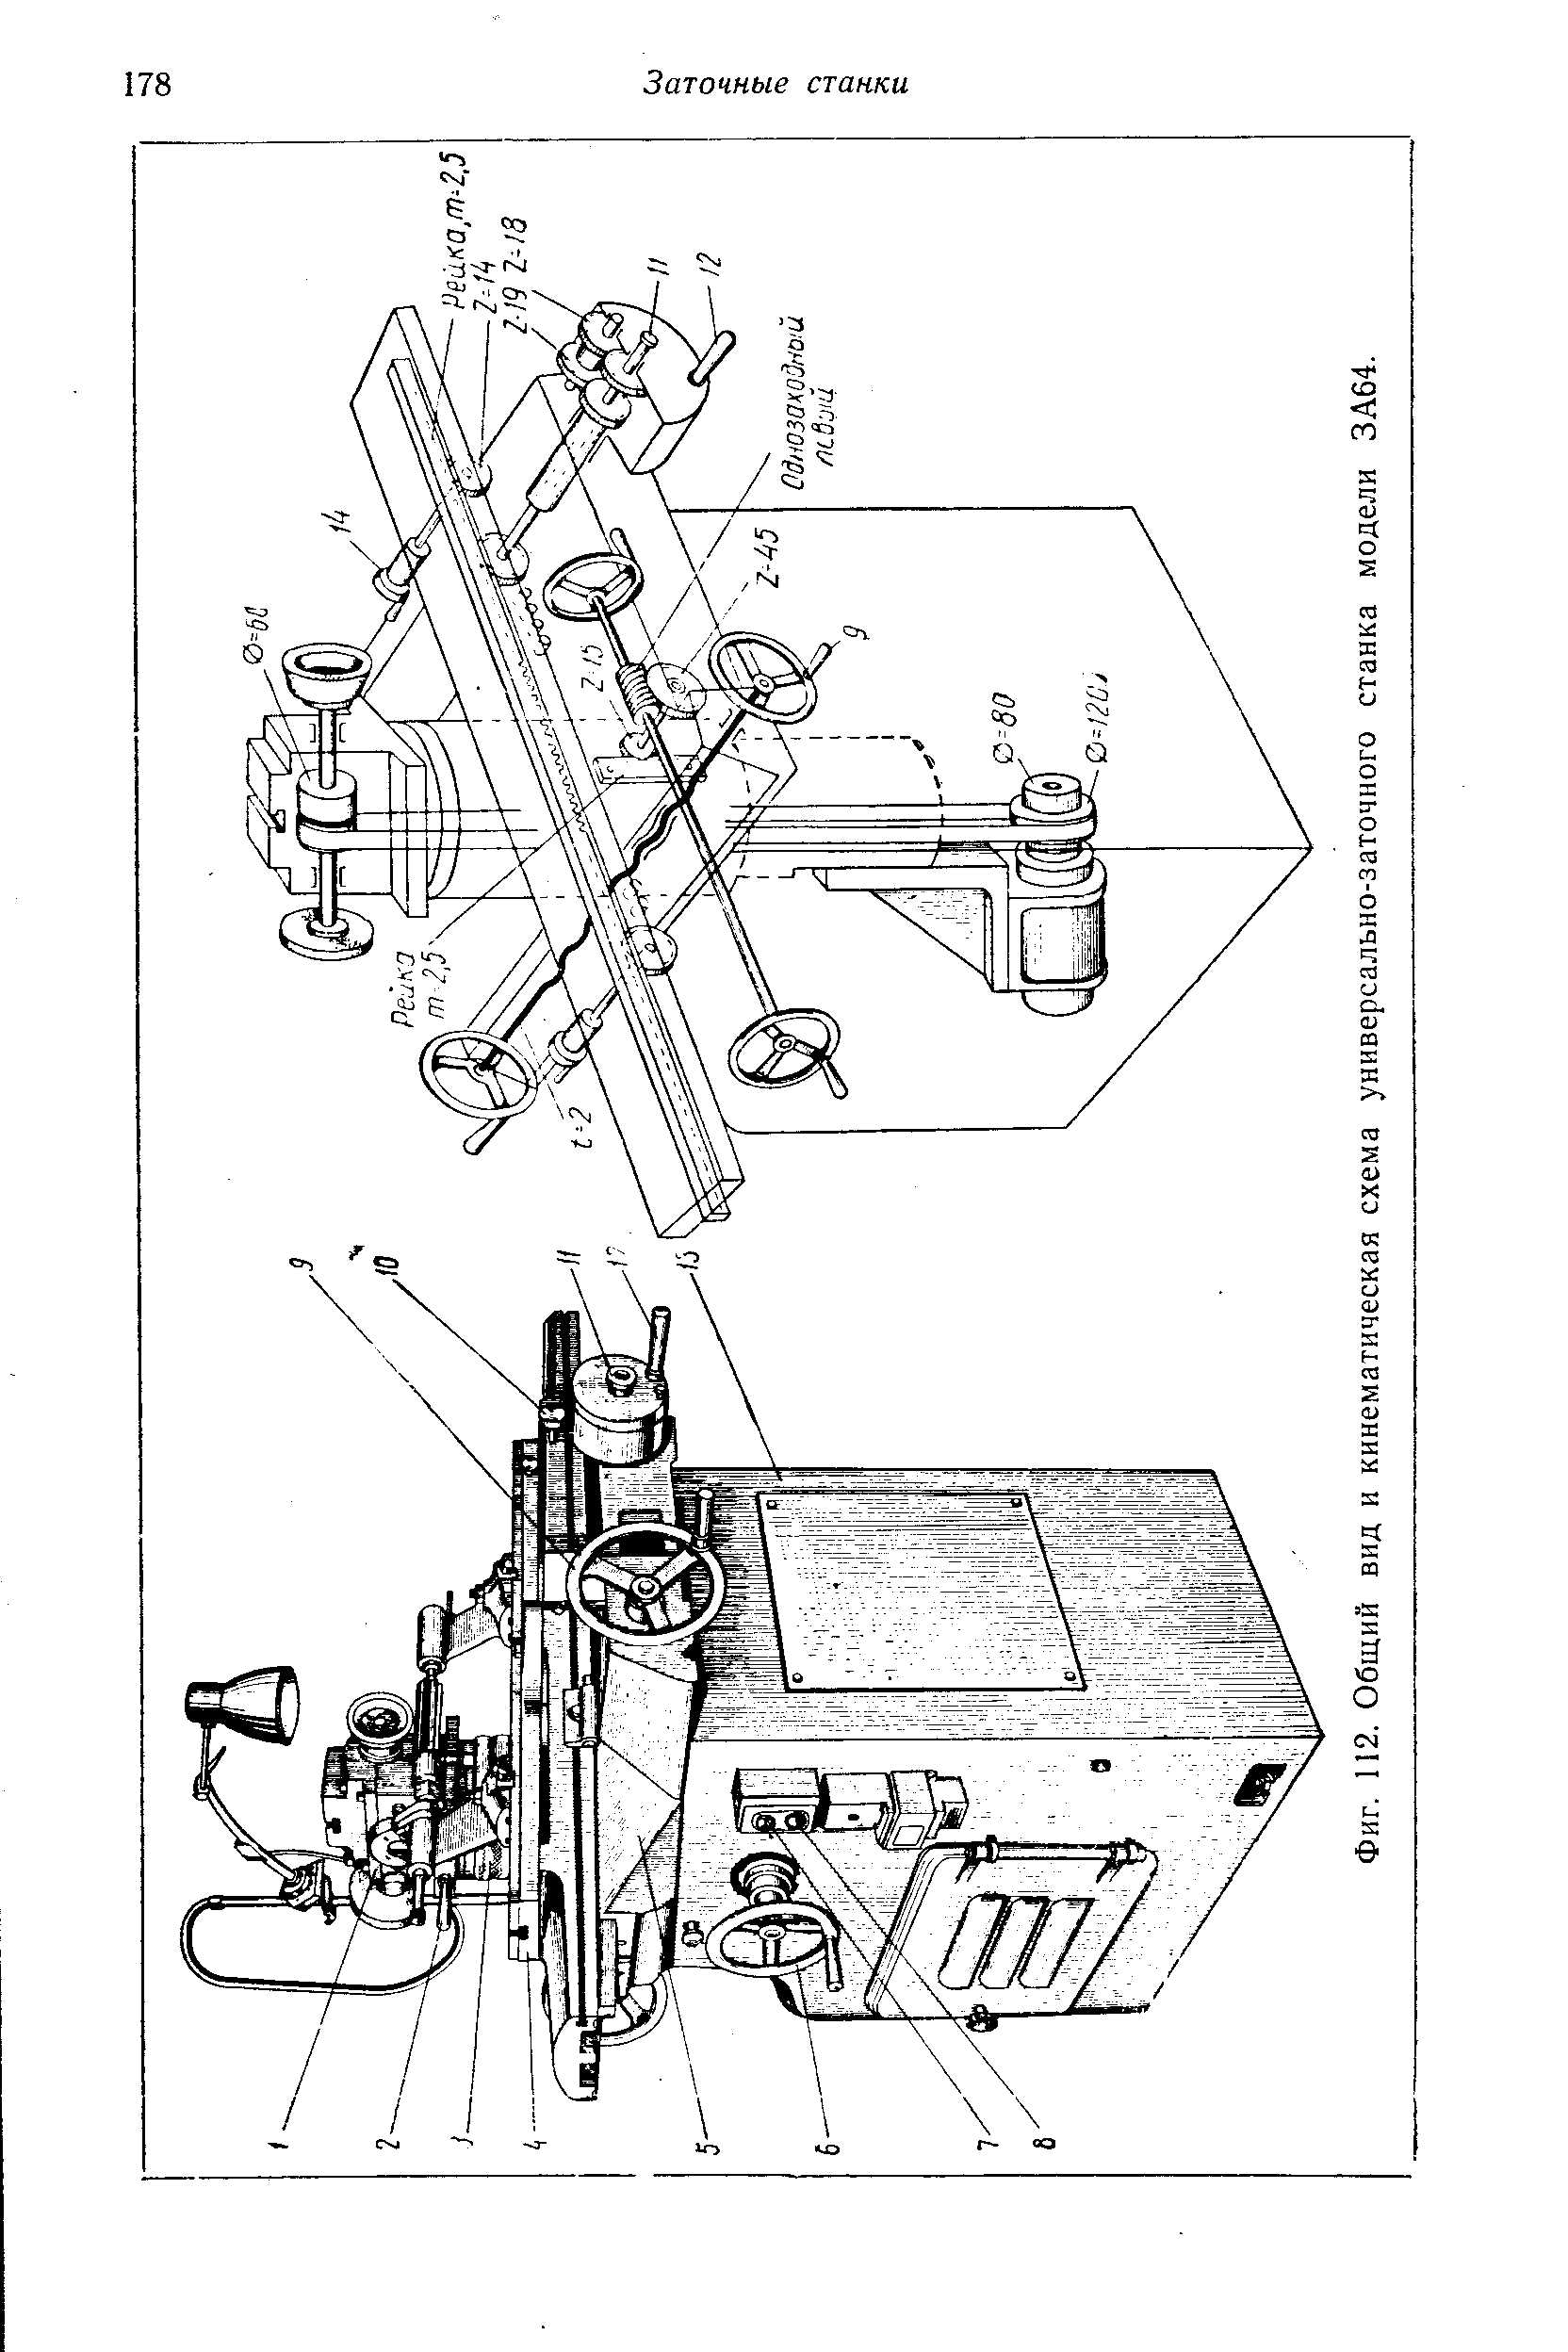 Фиг. 112. Общий вид и кинематическая схема универсально-заточного станка модели ЗА64.
